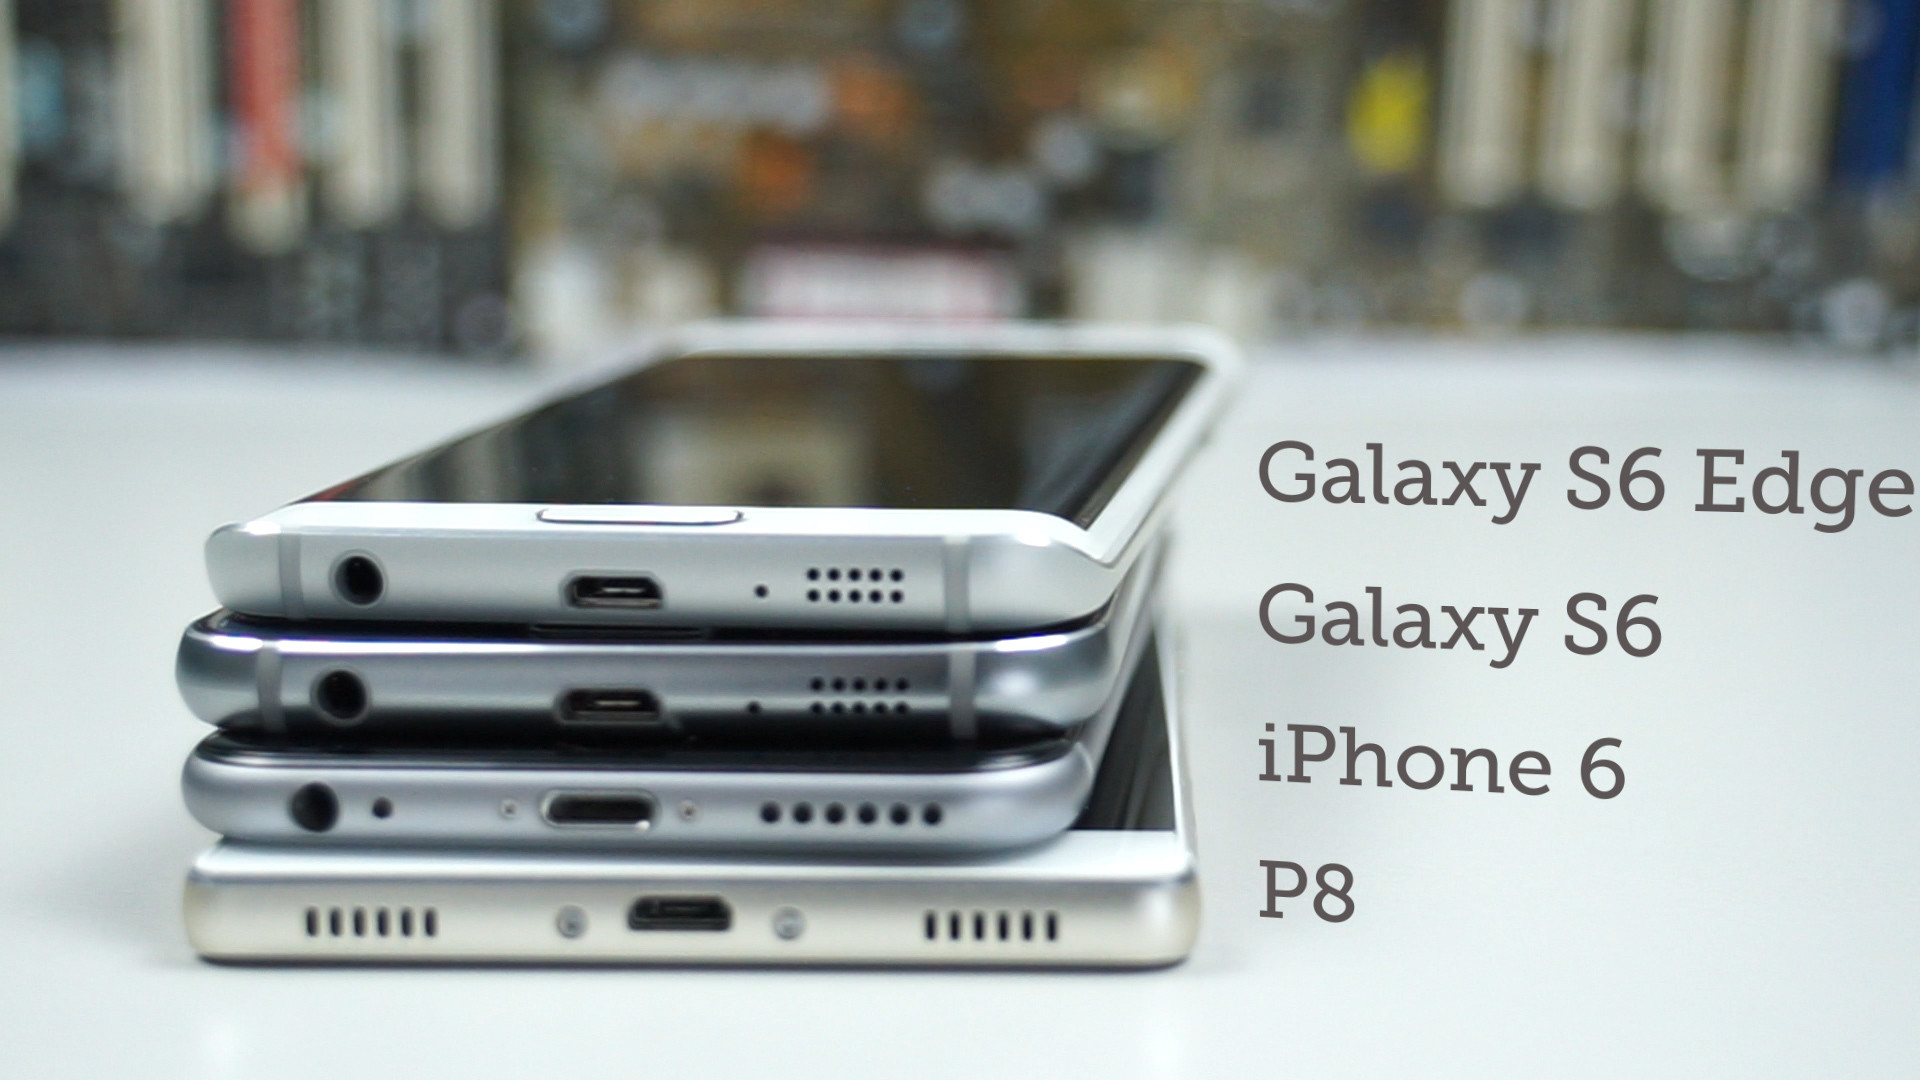 1920x1080 Vergleich: Galaxy S6 vs. Galaxy S6 edge vs. iPhone 6 vs. P8